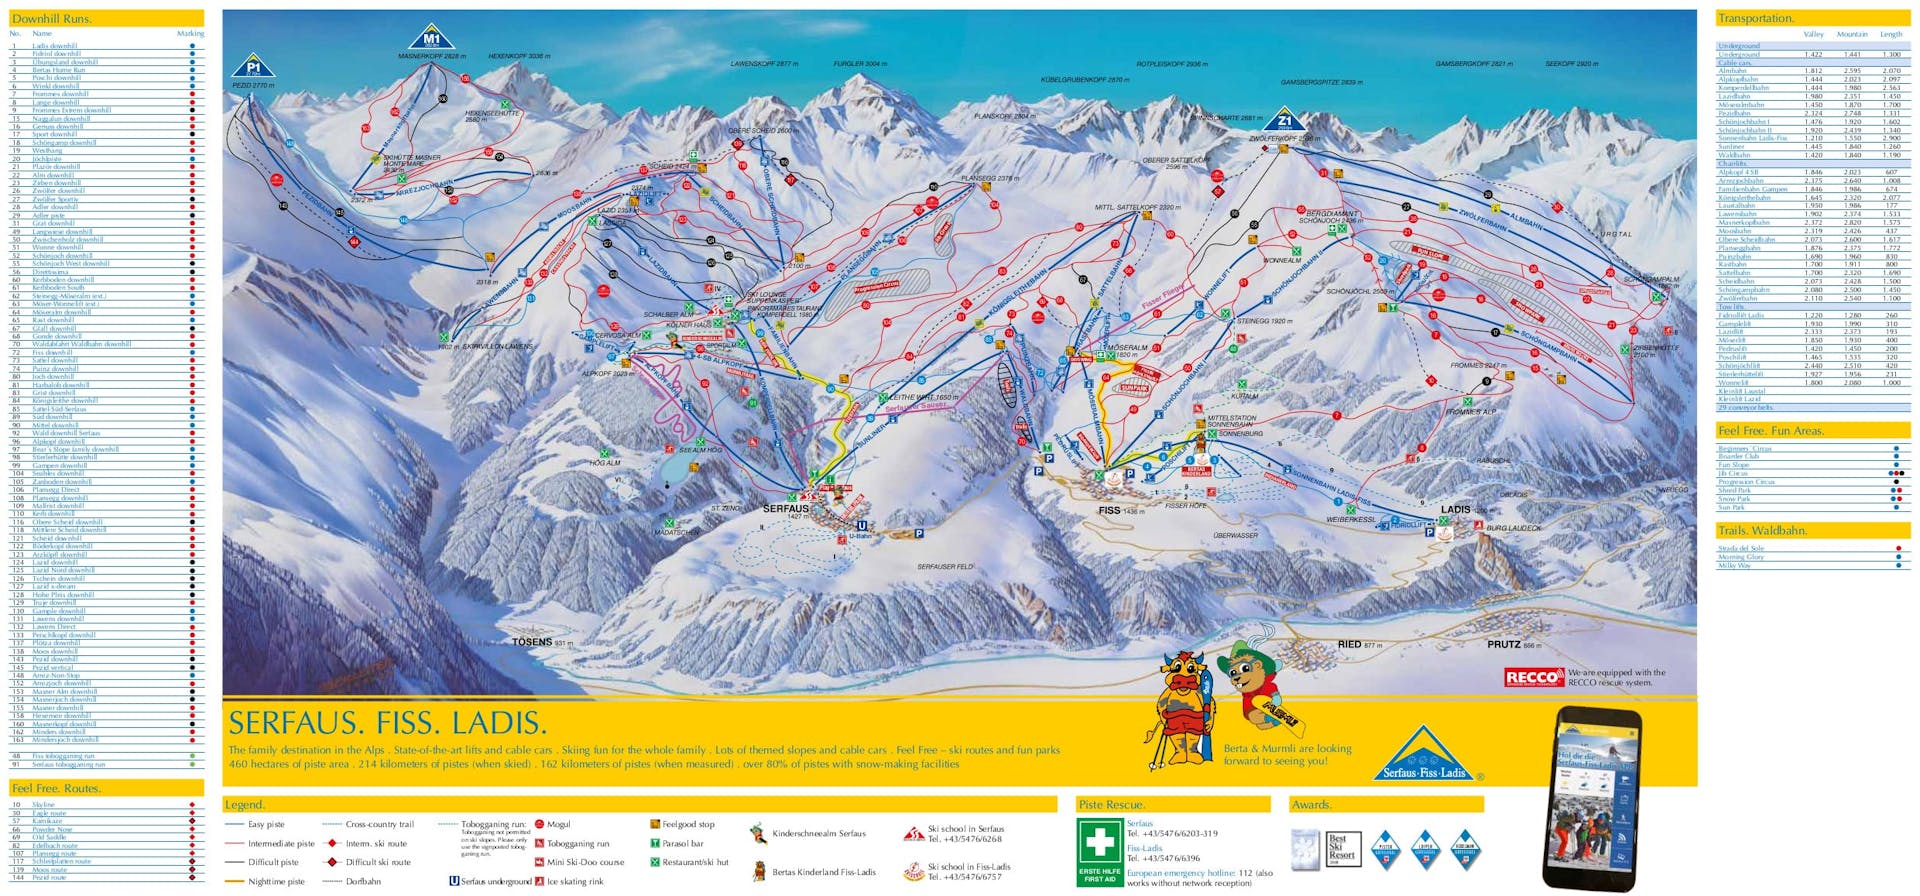 Serfaus ski map